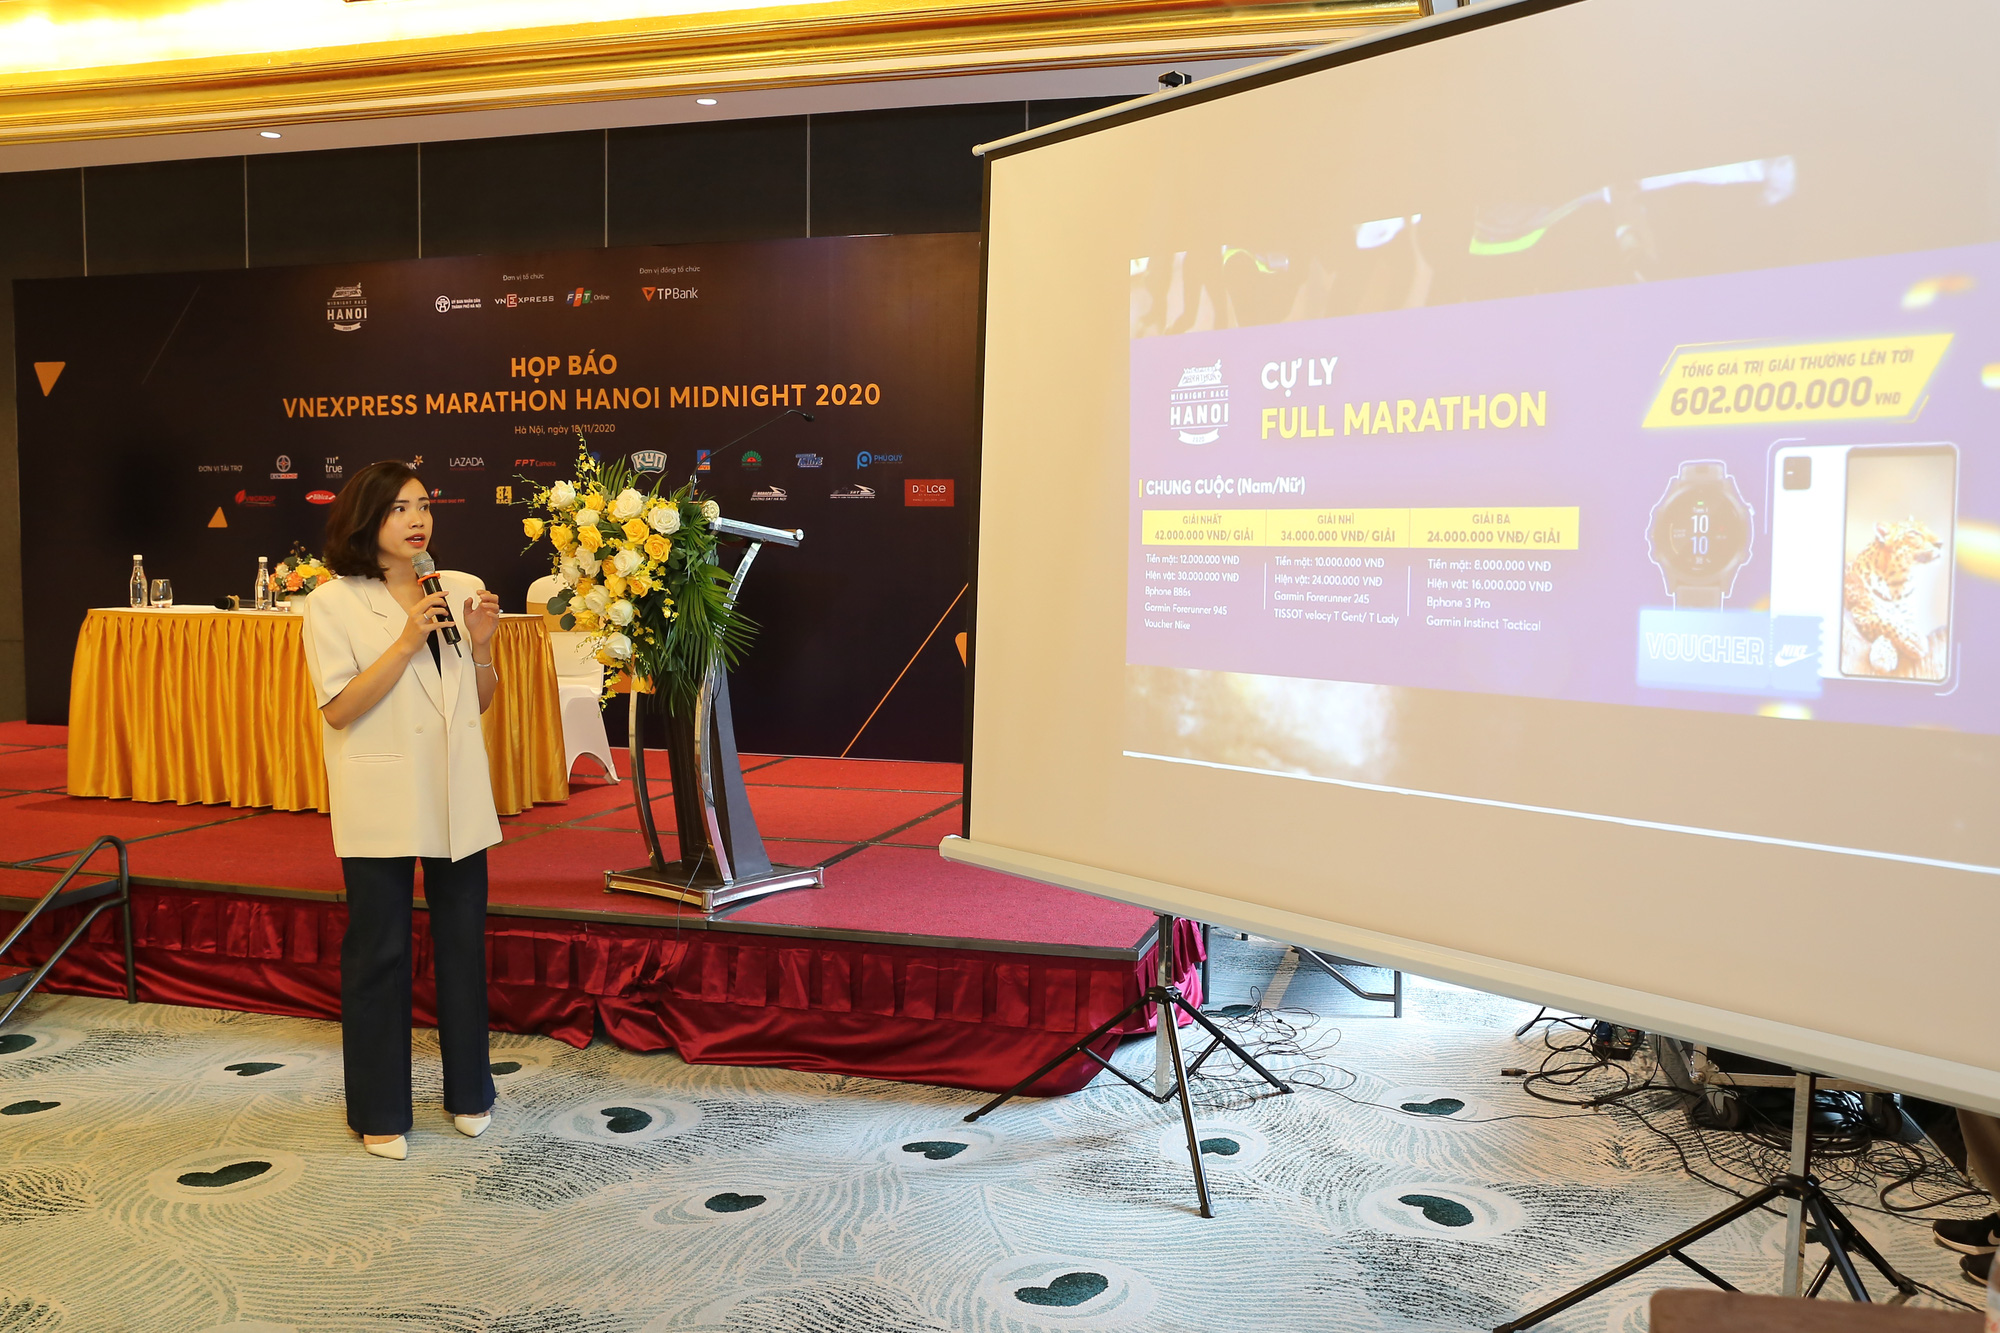 VnExpress Marathon Hanoi Midnight 2020: Hơn 1 tỷ đồng tiền thưởng! - Ảnh 2.